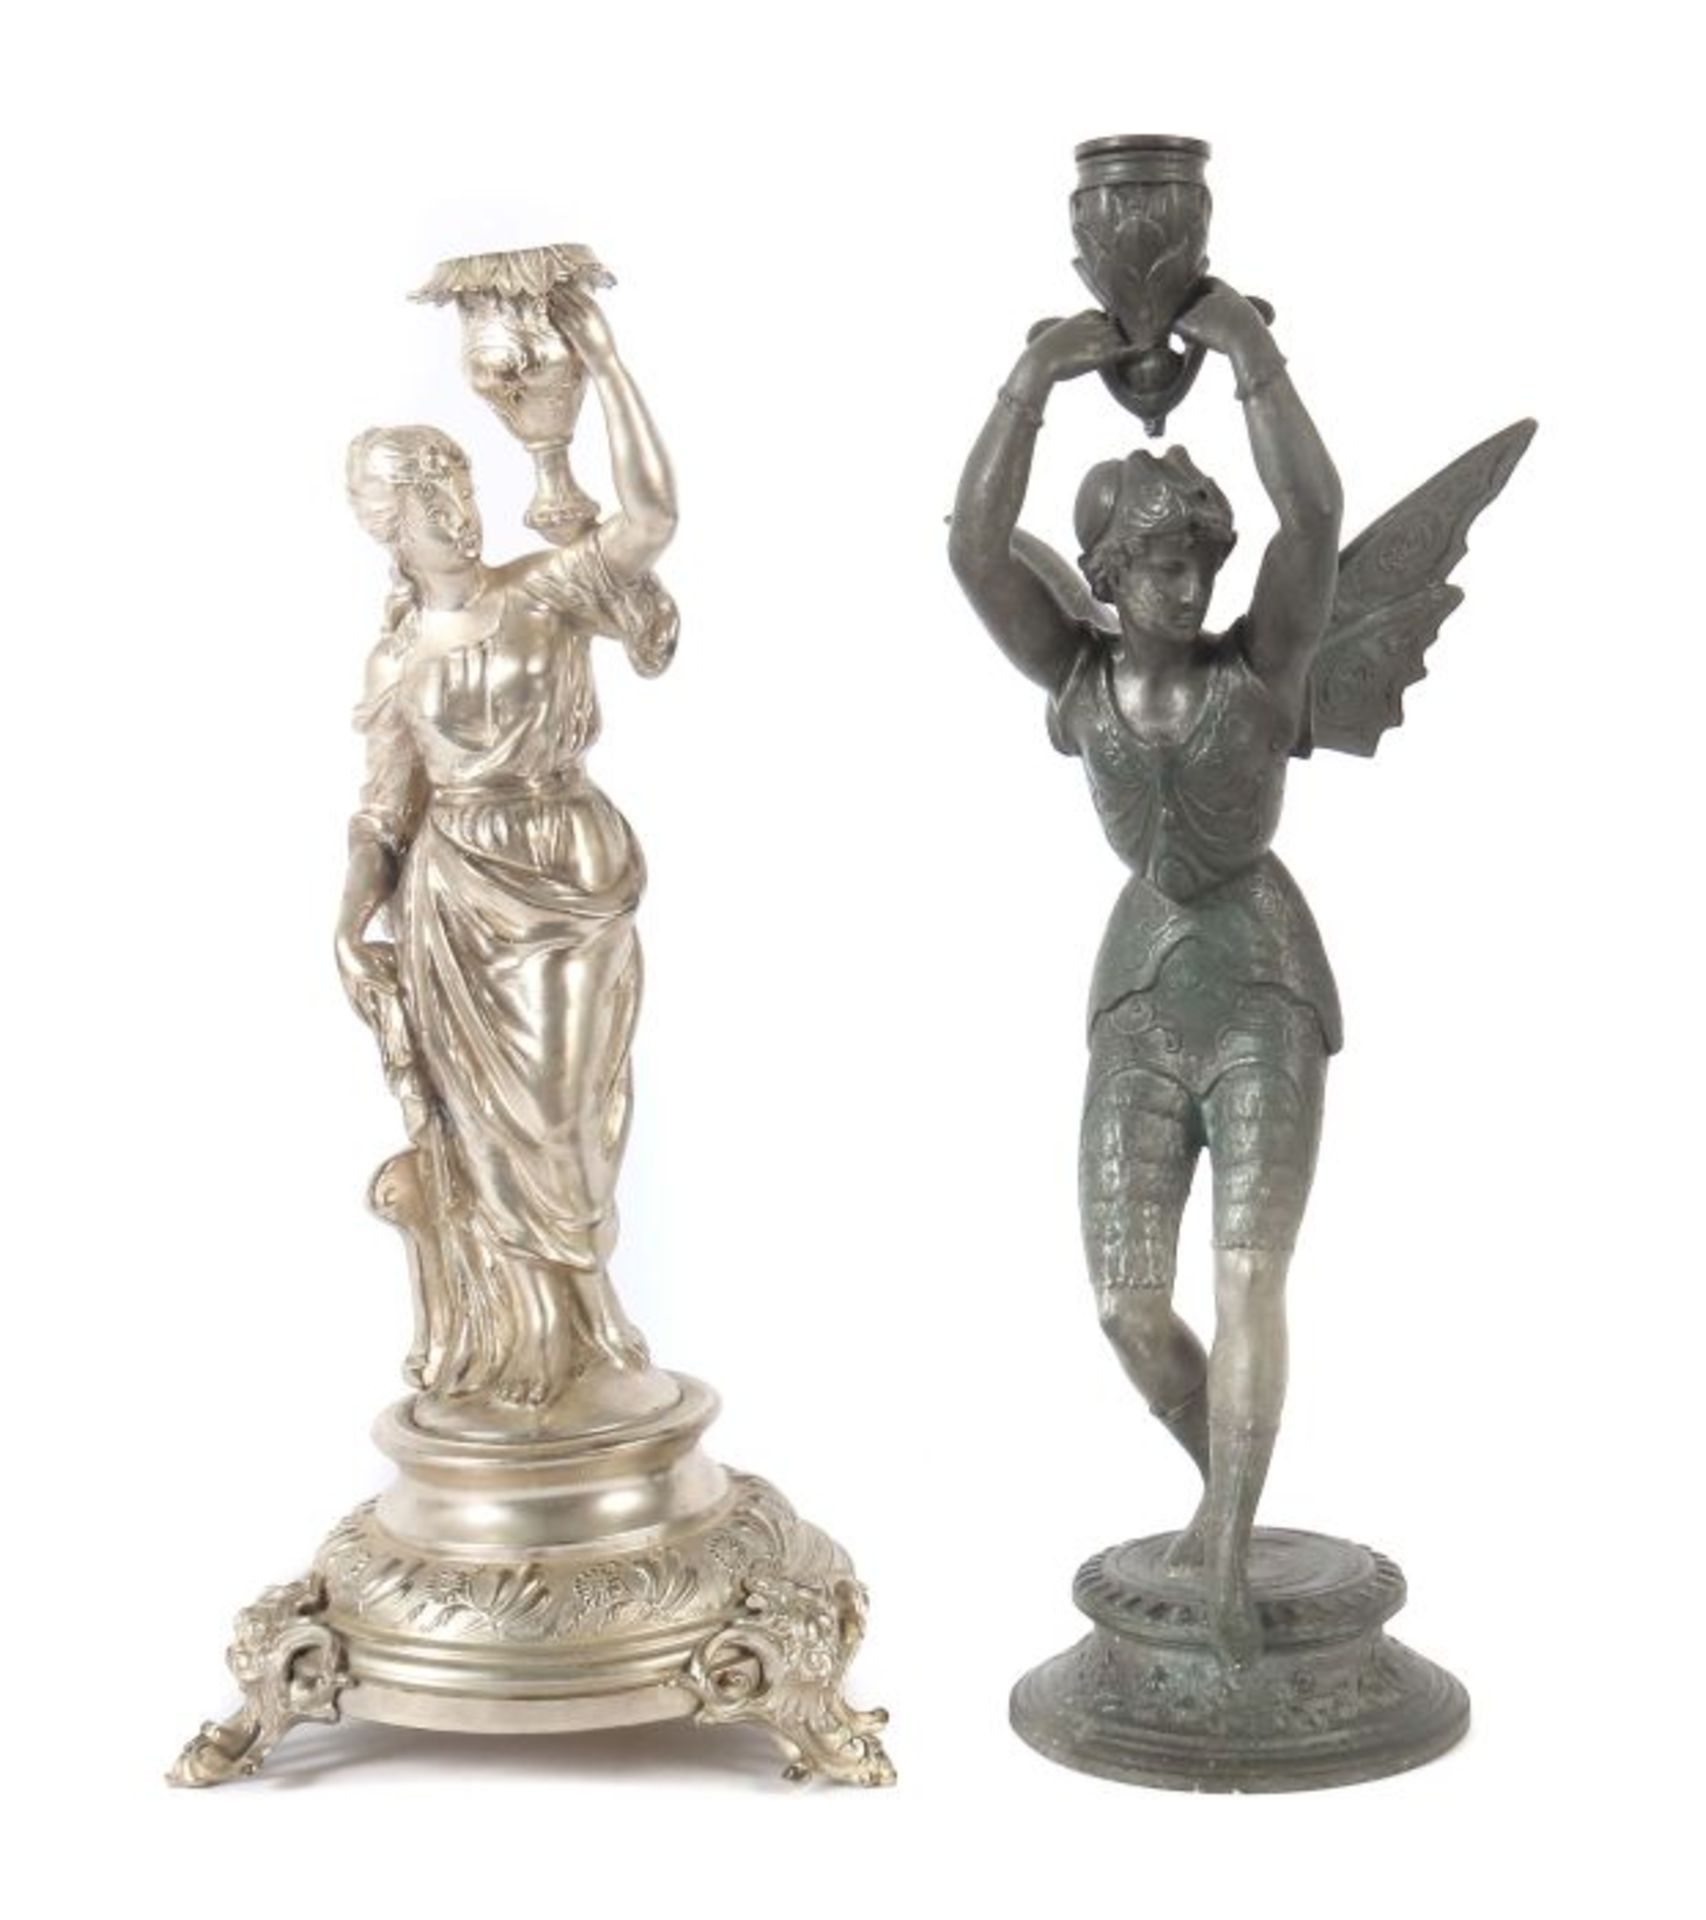 Zwei figürliche Tischleuchterum 1900, Metallguss, runder Sockel, stehende Fee bzw. galante Dame in